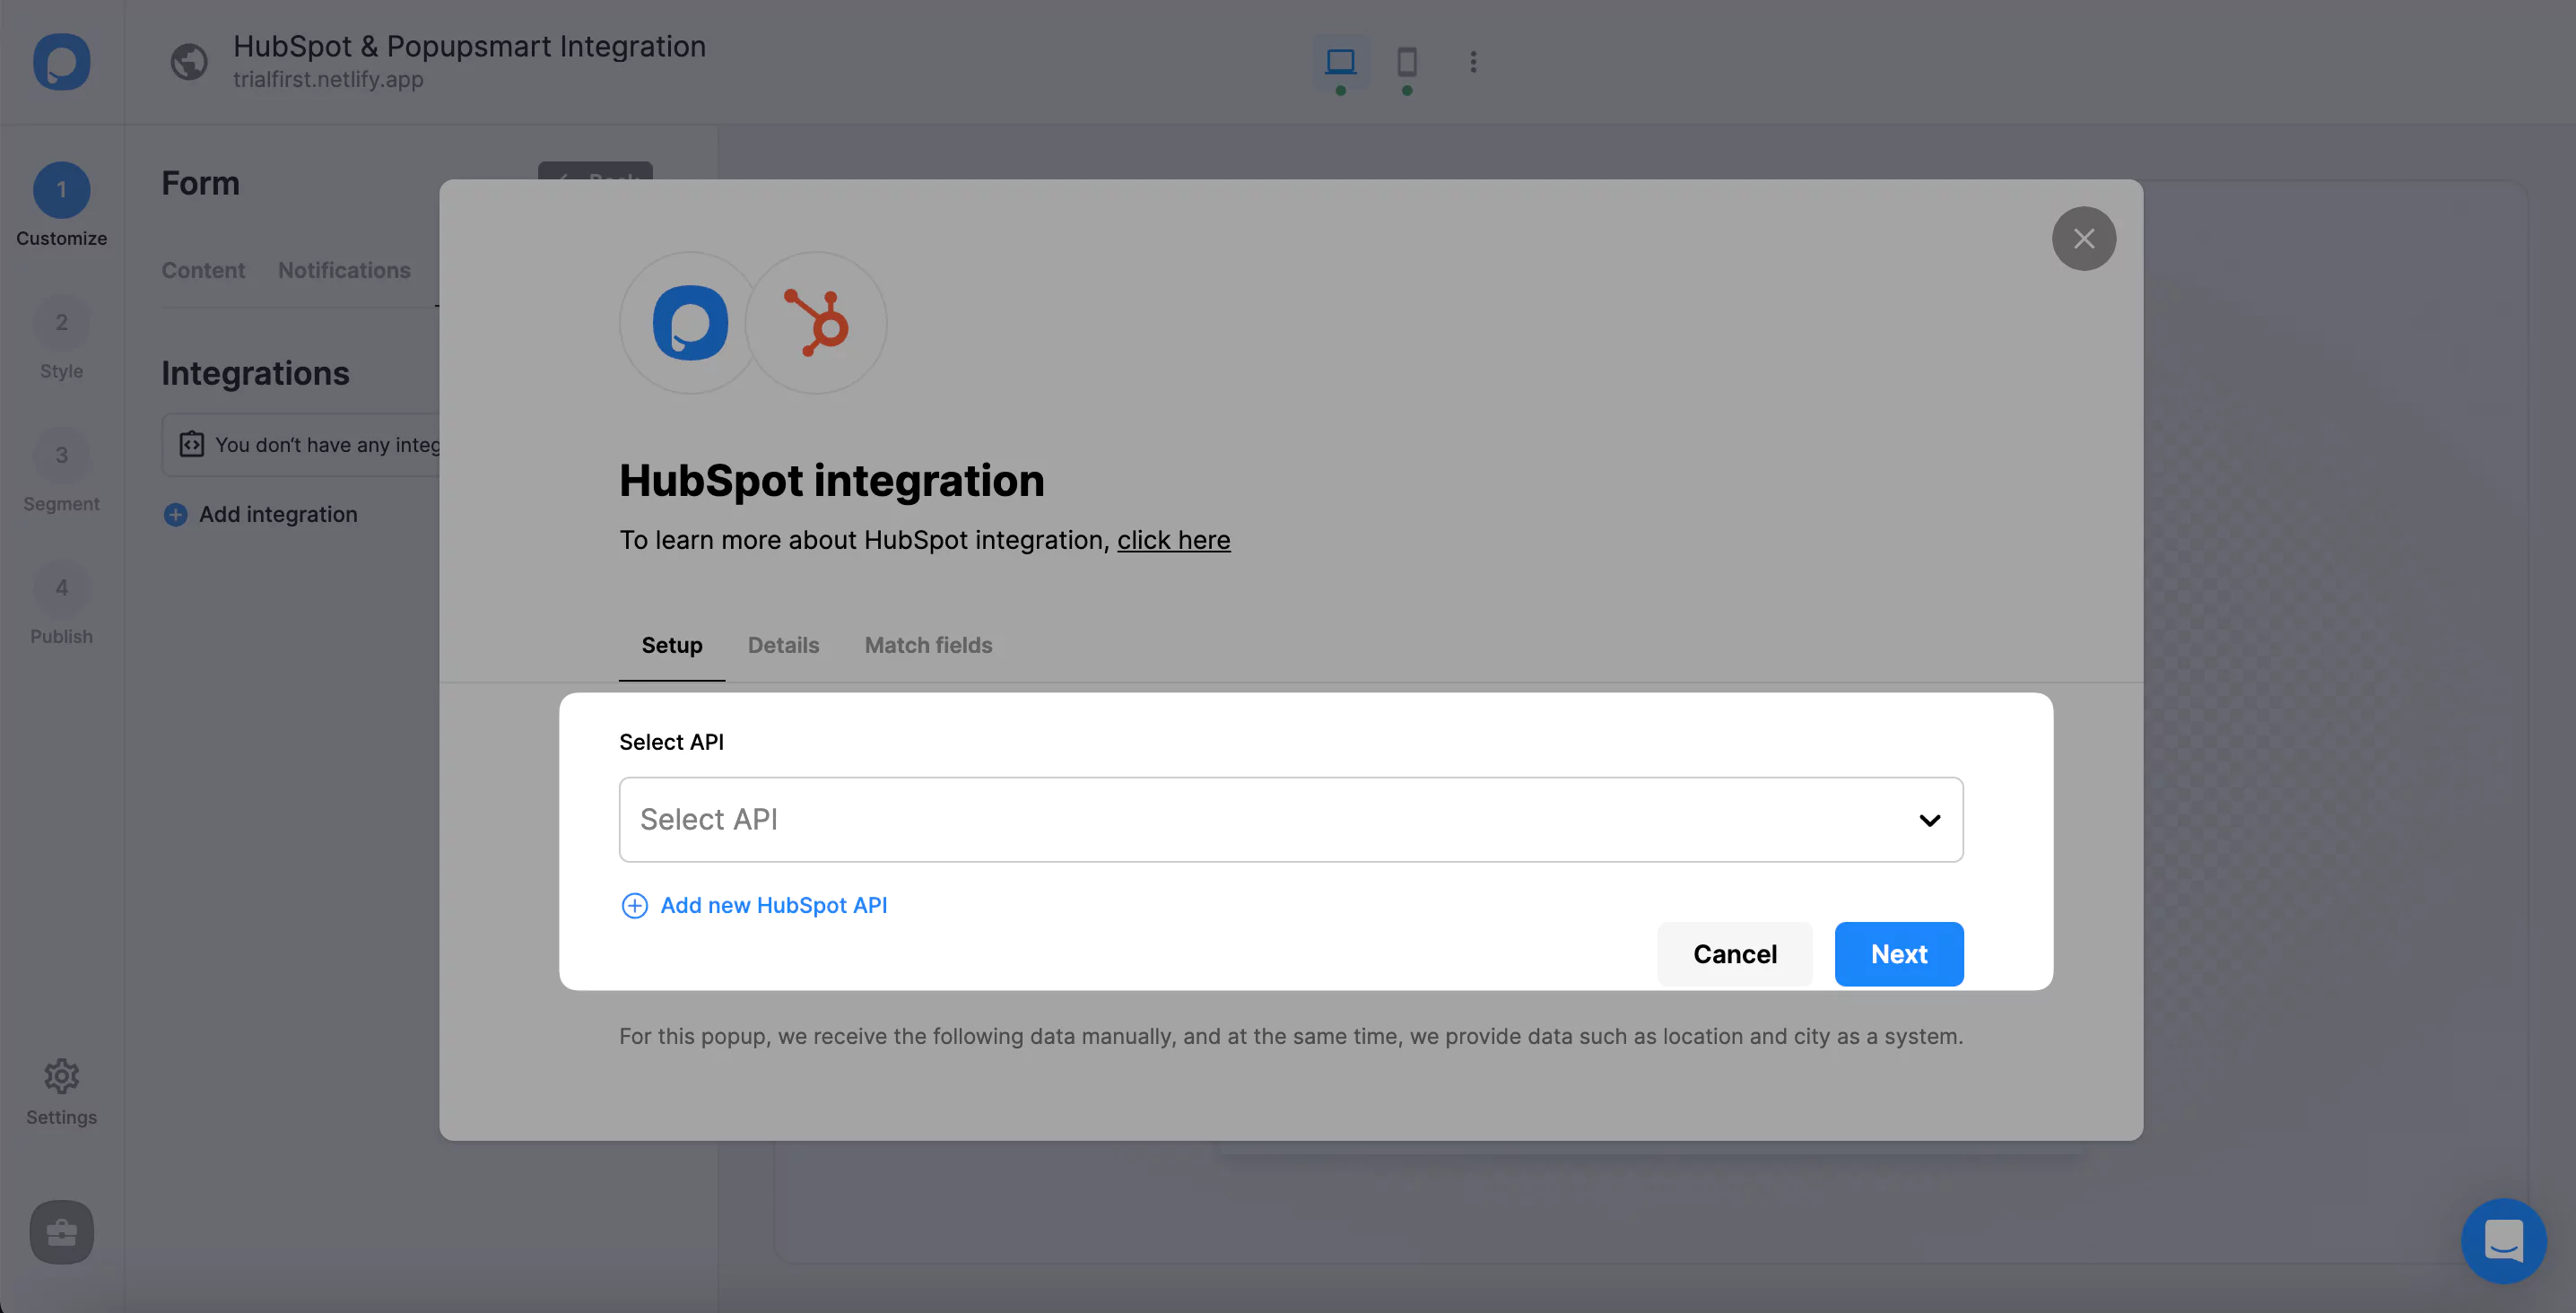 add a new HubSpot API